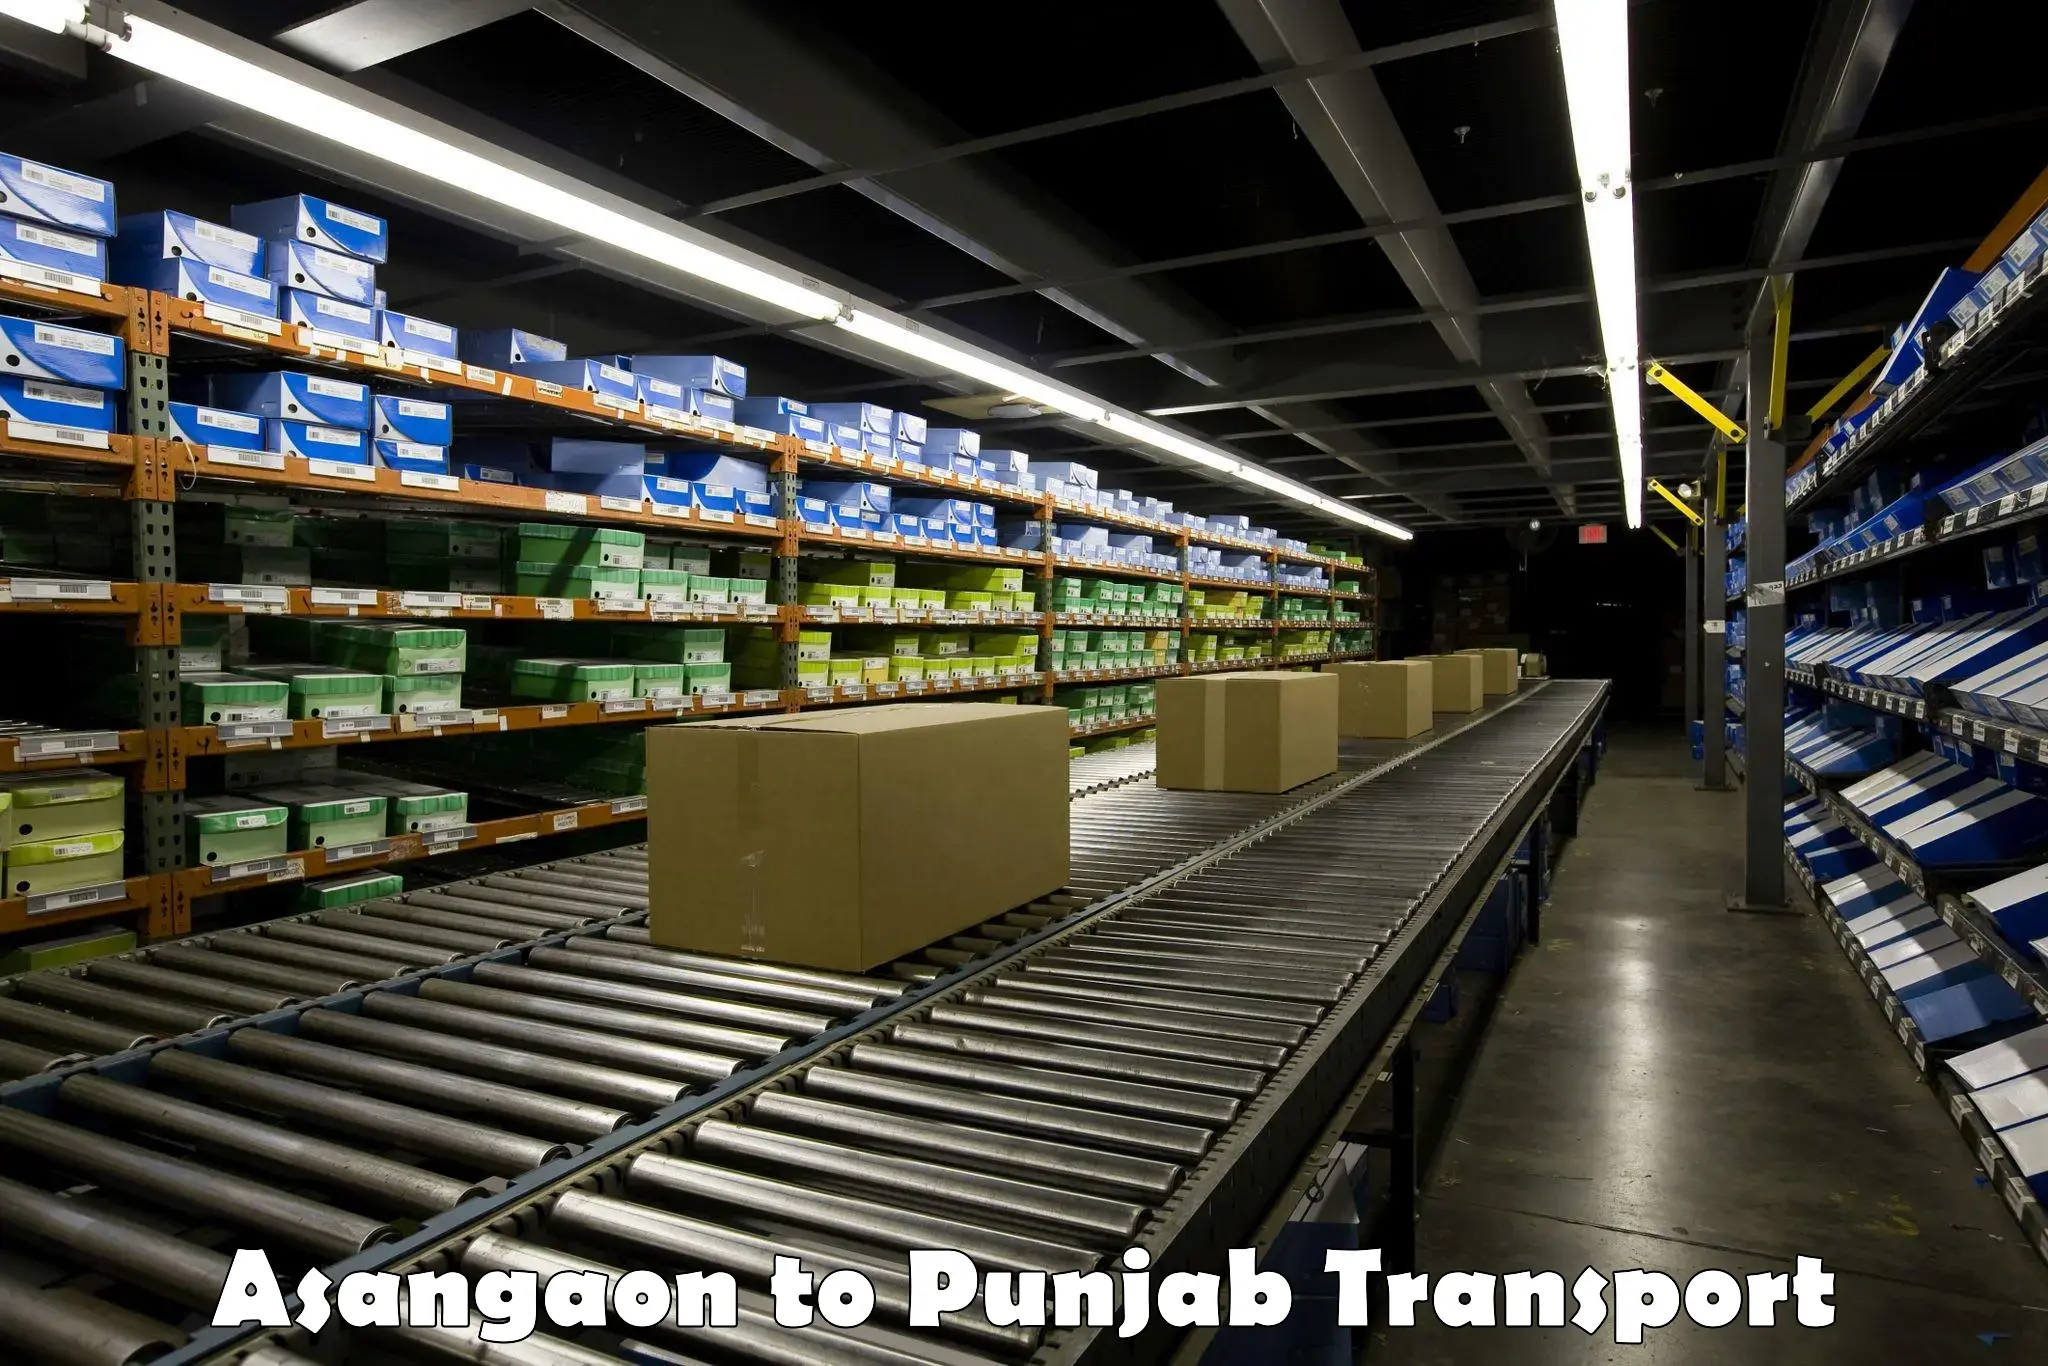 Transport in sharing Asangaon to Punjab